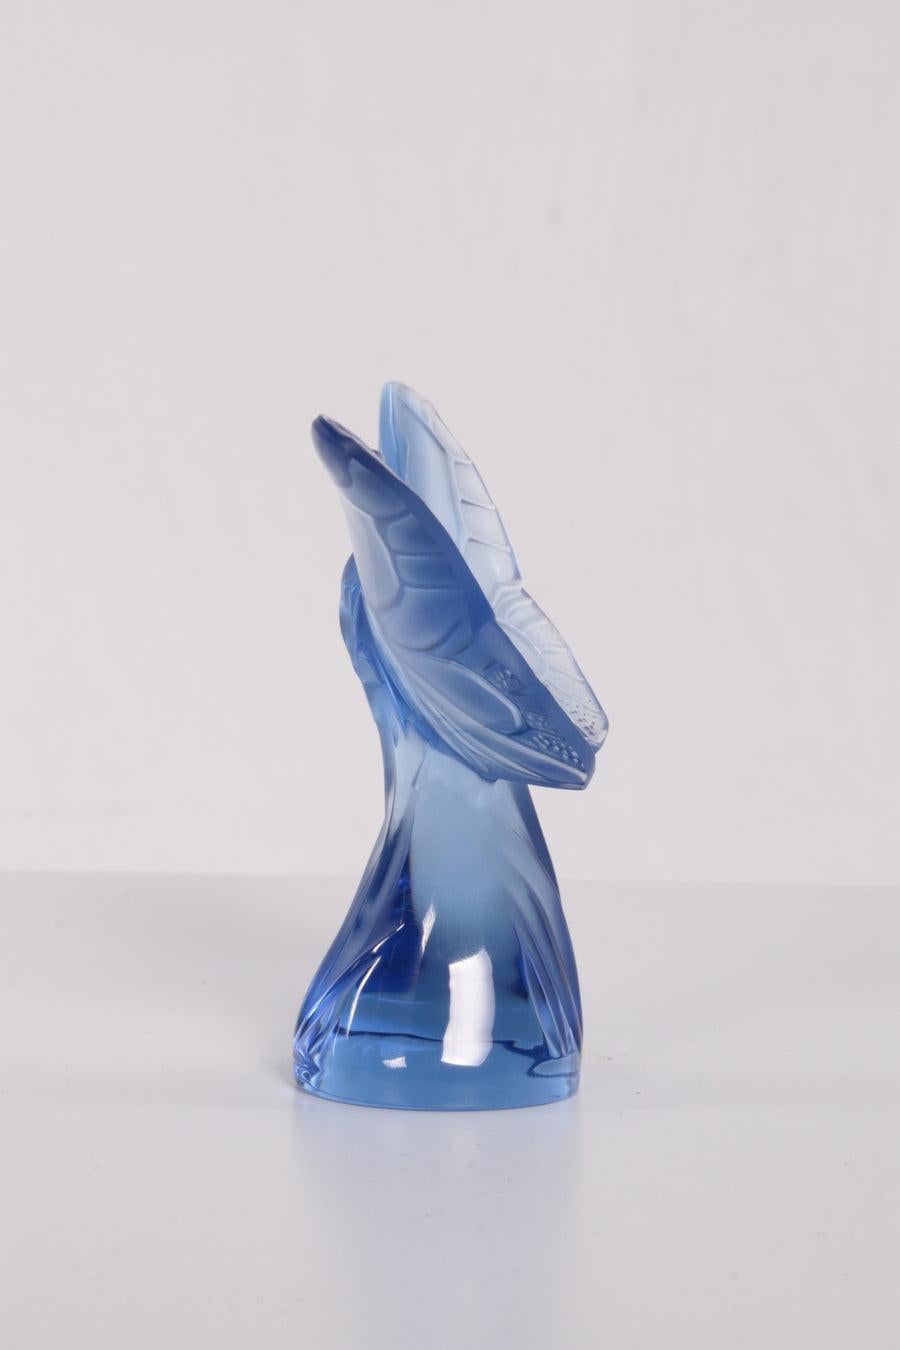 Sculpture de papillon en verre bleu Lalique France, 1980

Très beau papillon en verre marqué Lalique france

René Lalique est devenu synonyme des arts décoratifs français de l'Art nouveau. Né en 1860, René Lalique a commencé à concevoir des bijoux